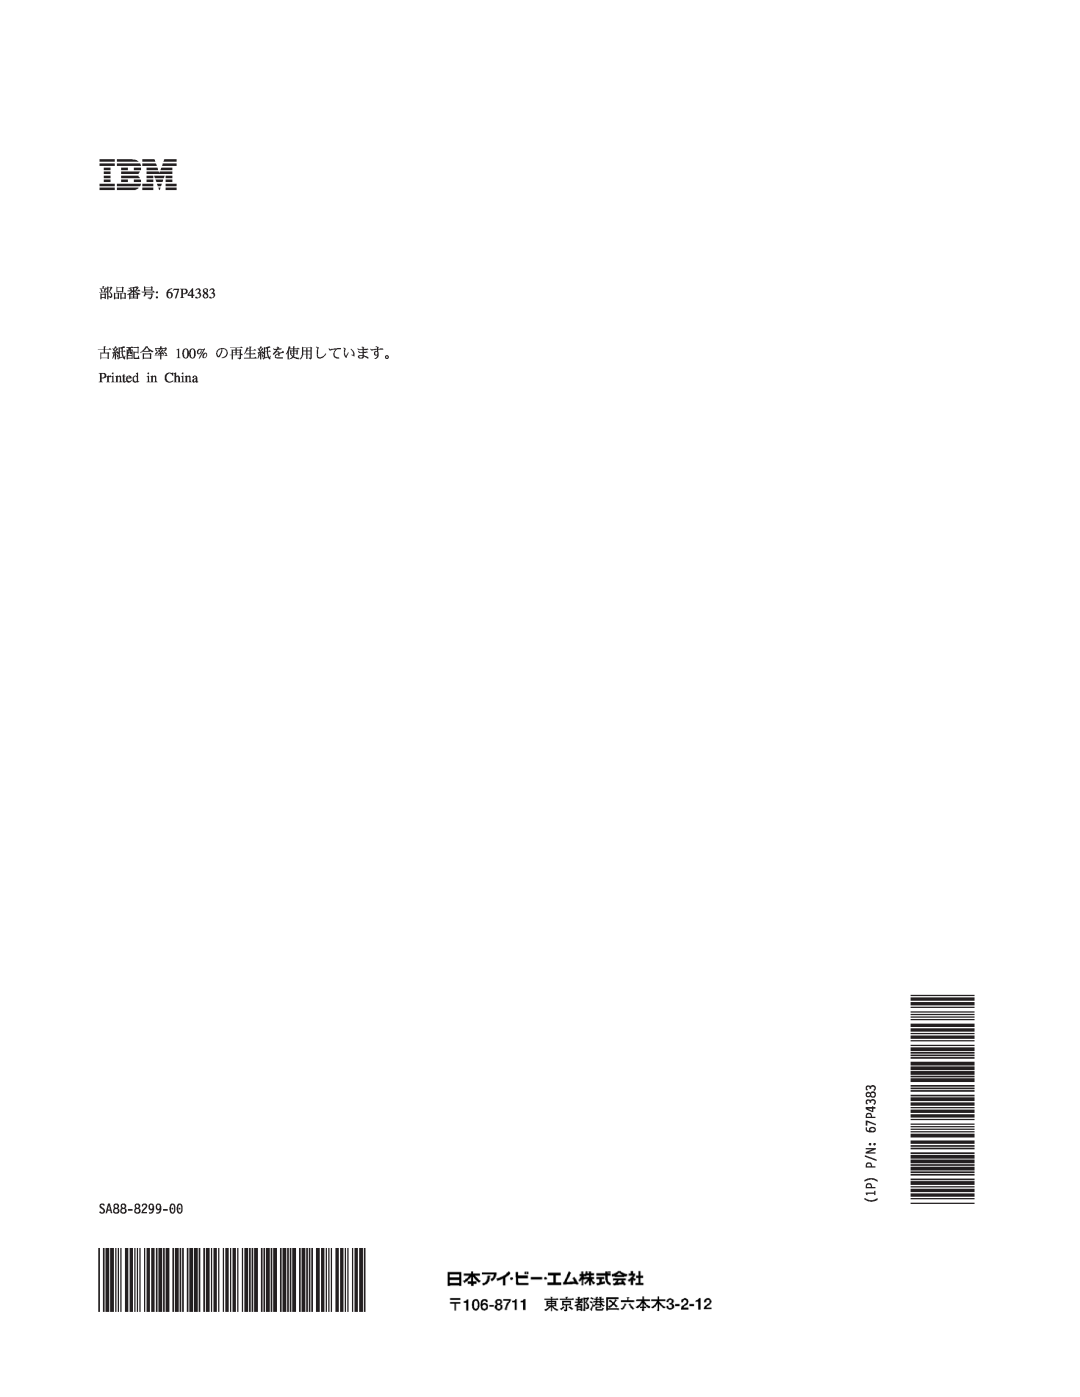 IBM 6229 manual tJVf: 67P4383 Efg 100% NF8frHQ7F$^9#, Printed in China, SA88-8299-00, 1P P/N: 67P4383 